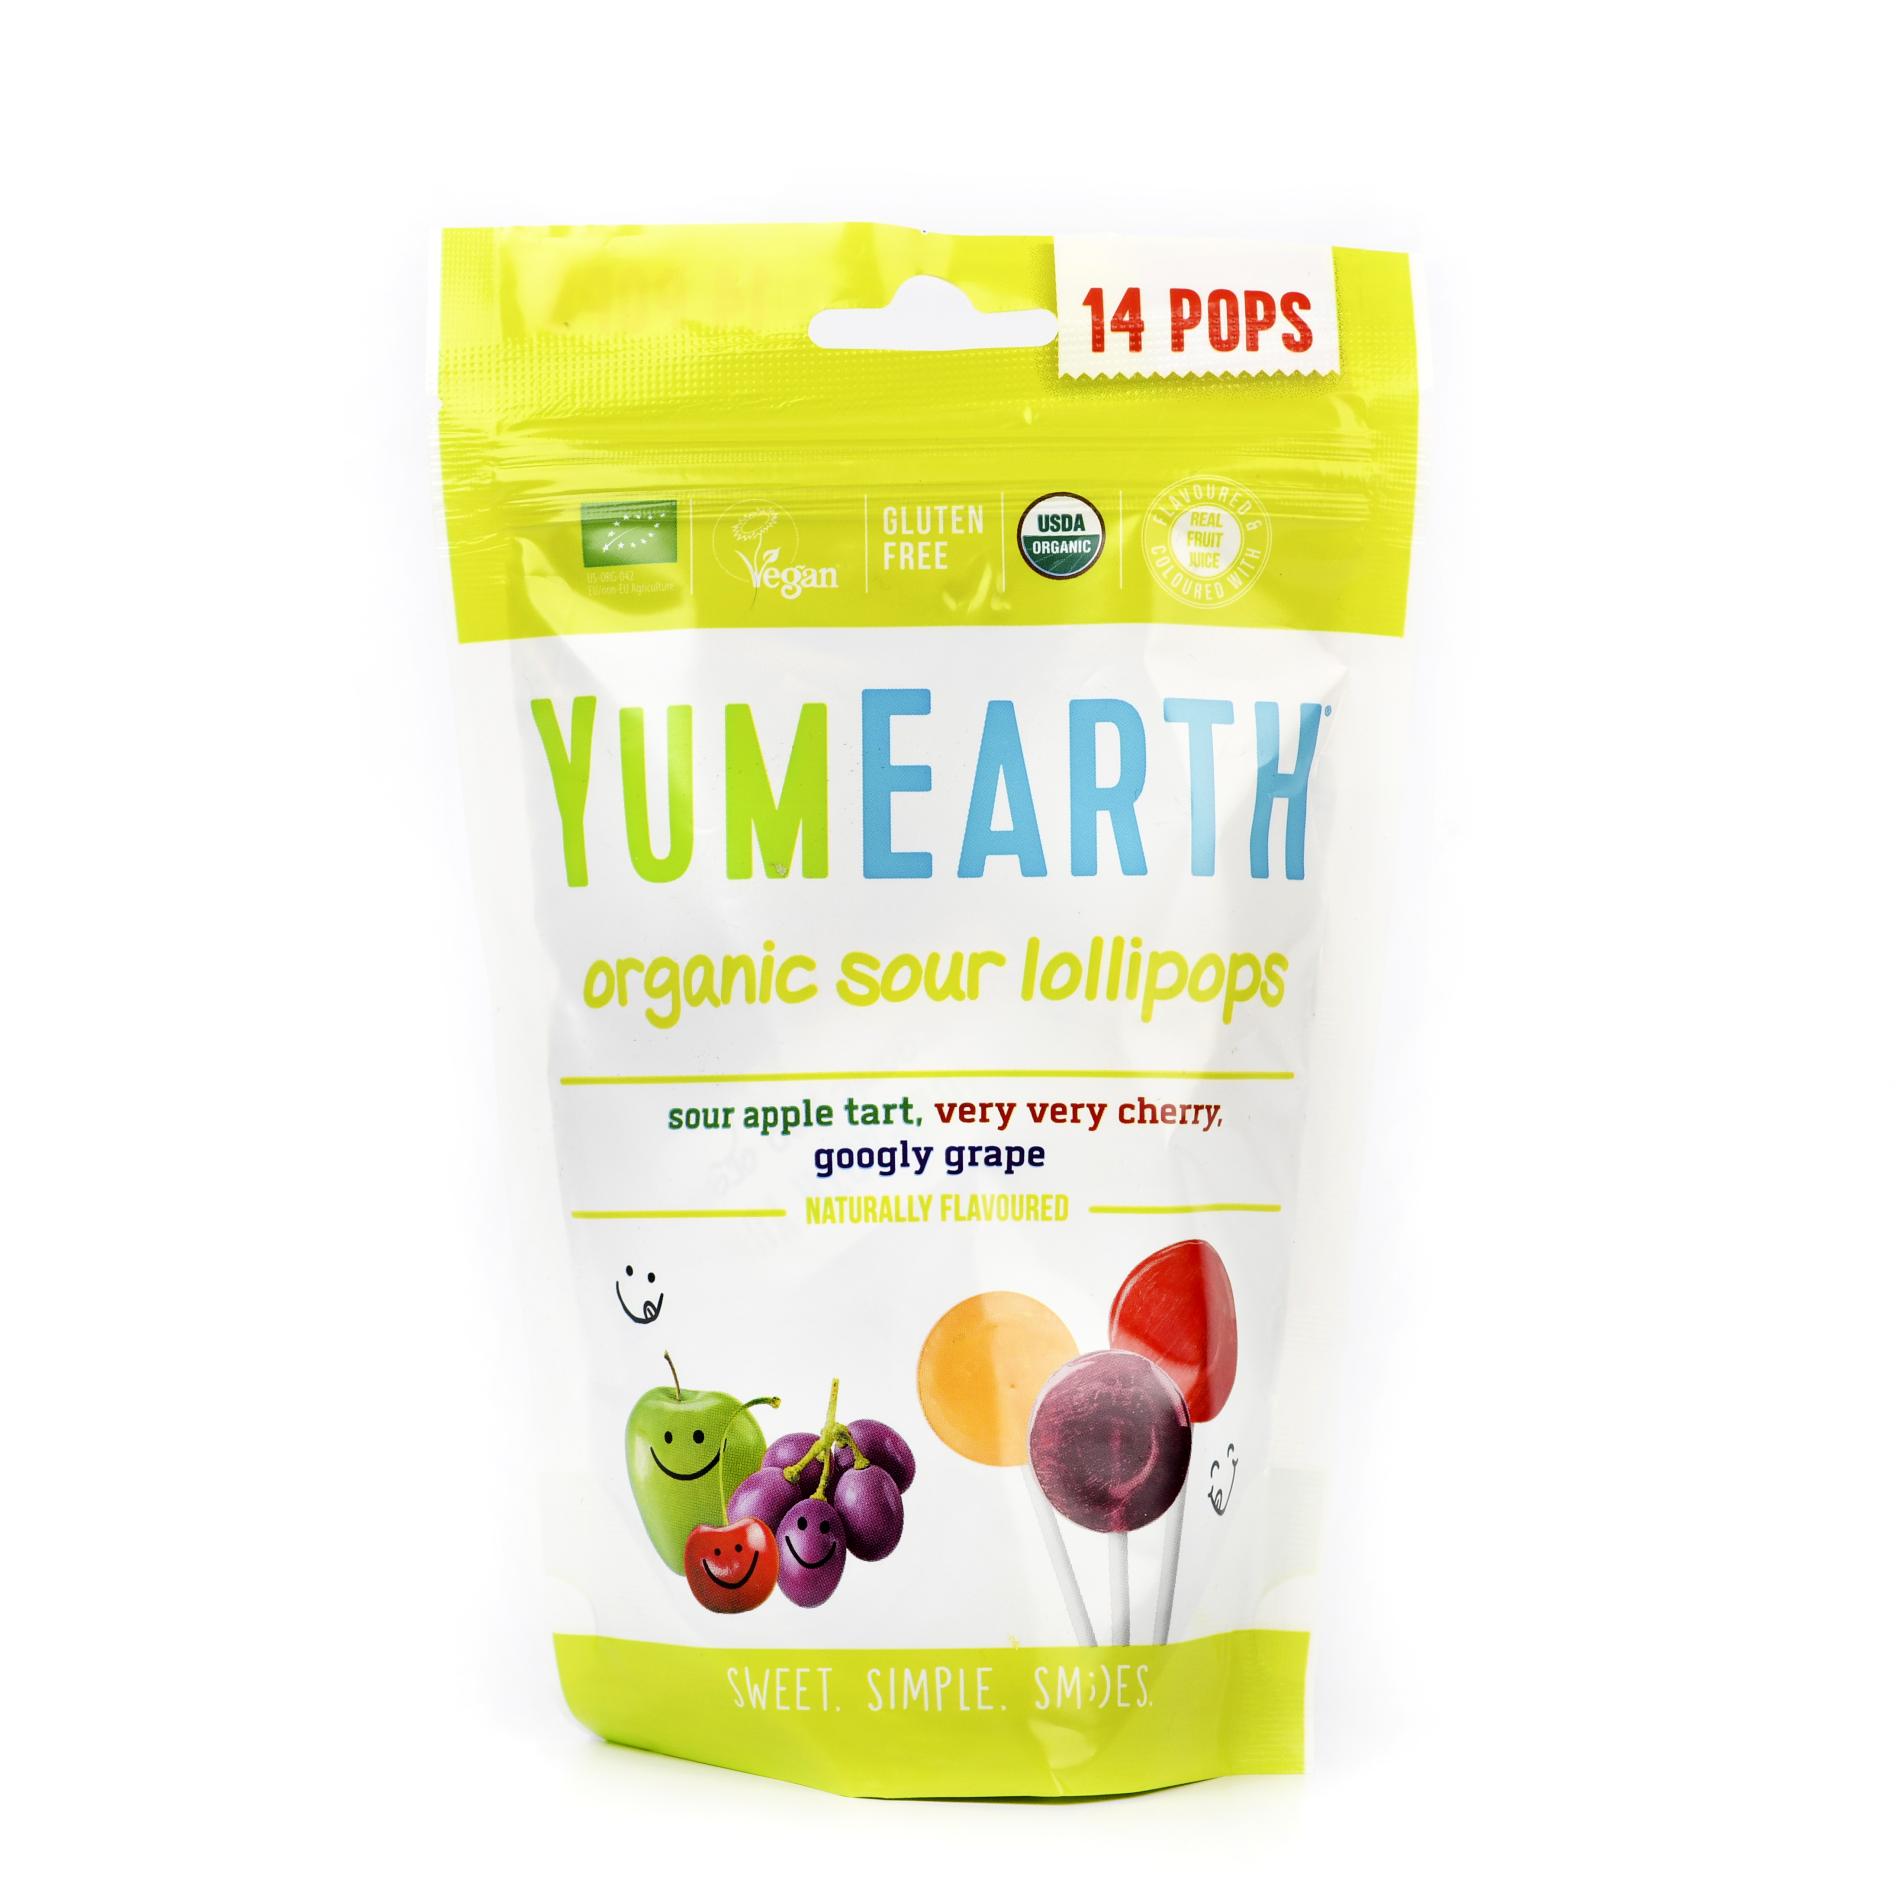 Органическая карамель Organic Sour Lollipops на палочке  со вкусами  вишня, терпкое яблоко, виноград  Yum Earth - 85 г